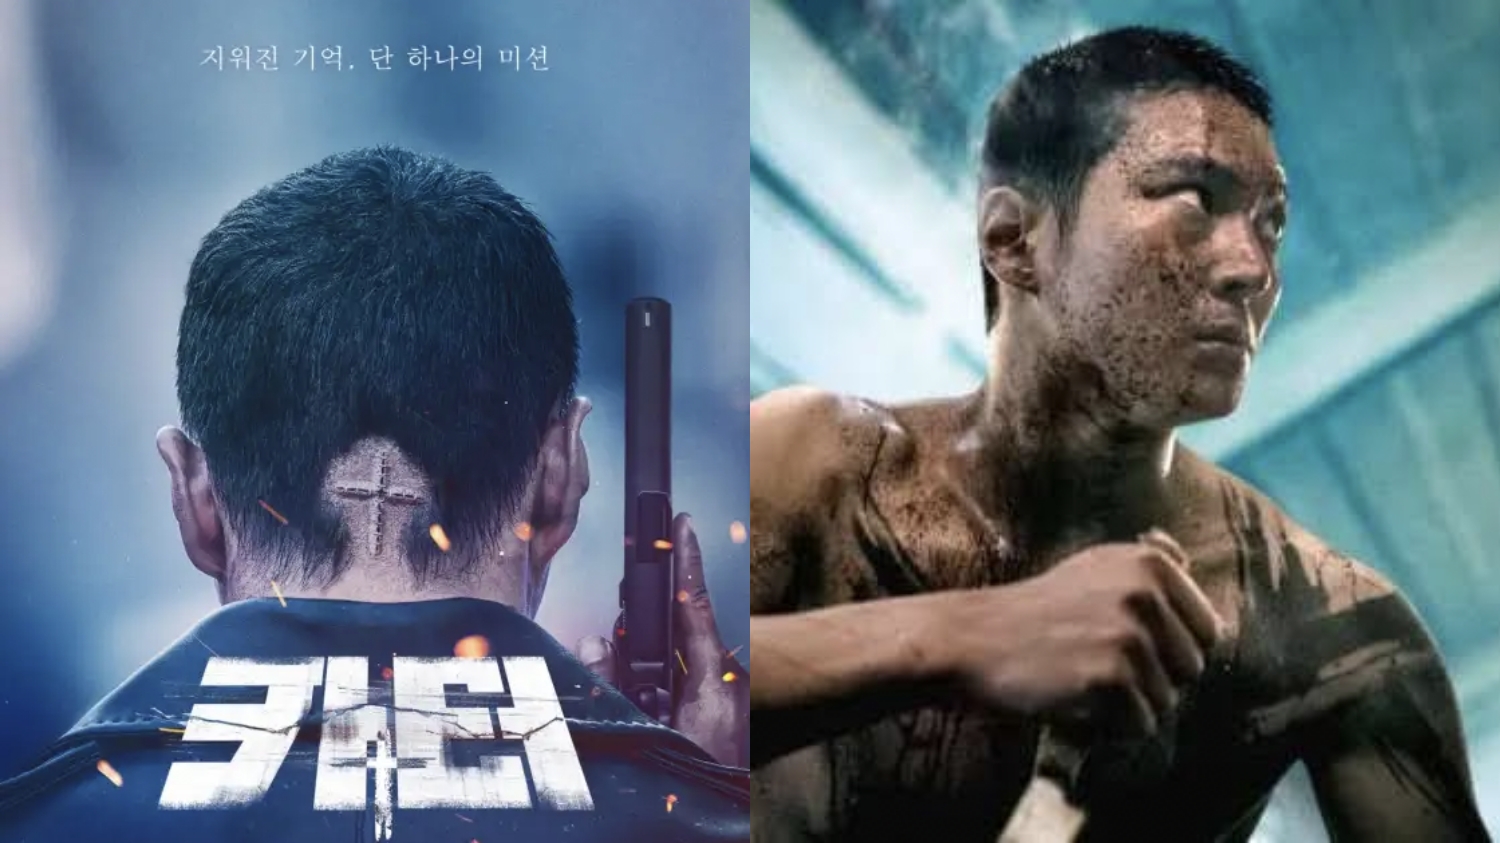 Film Korea Carter Jalani Misi Tanpa Tahu Identitas Sendiri, Yuk intip Sinopsisnya Disini